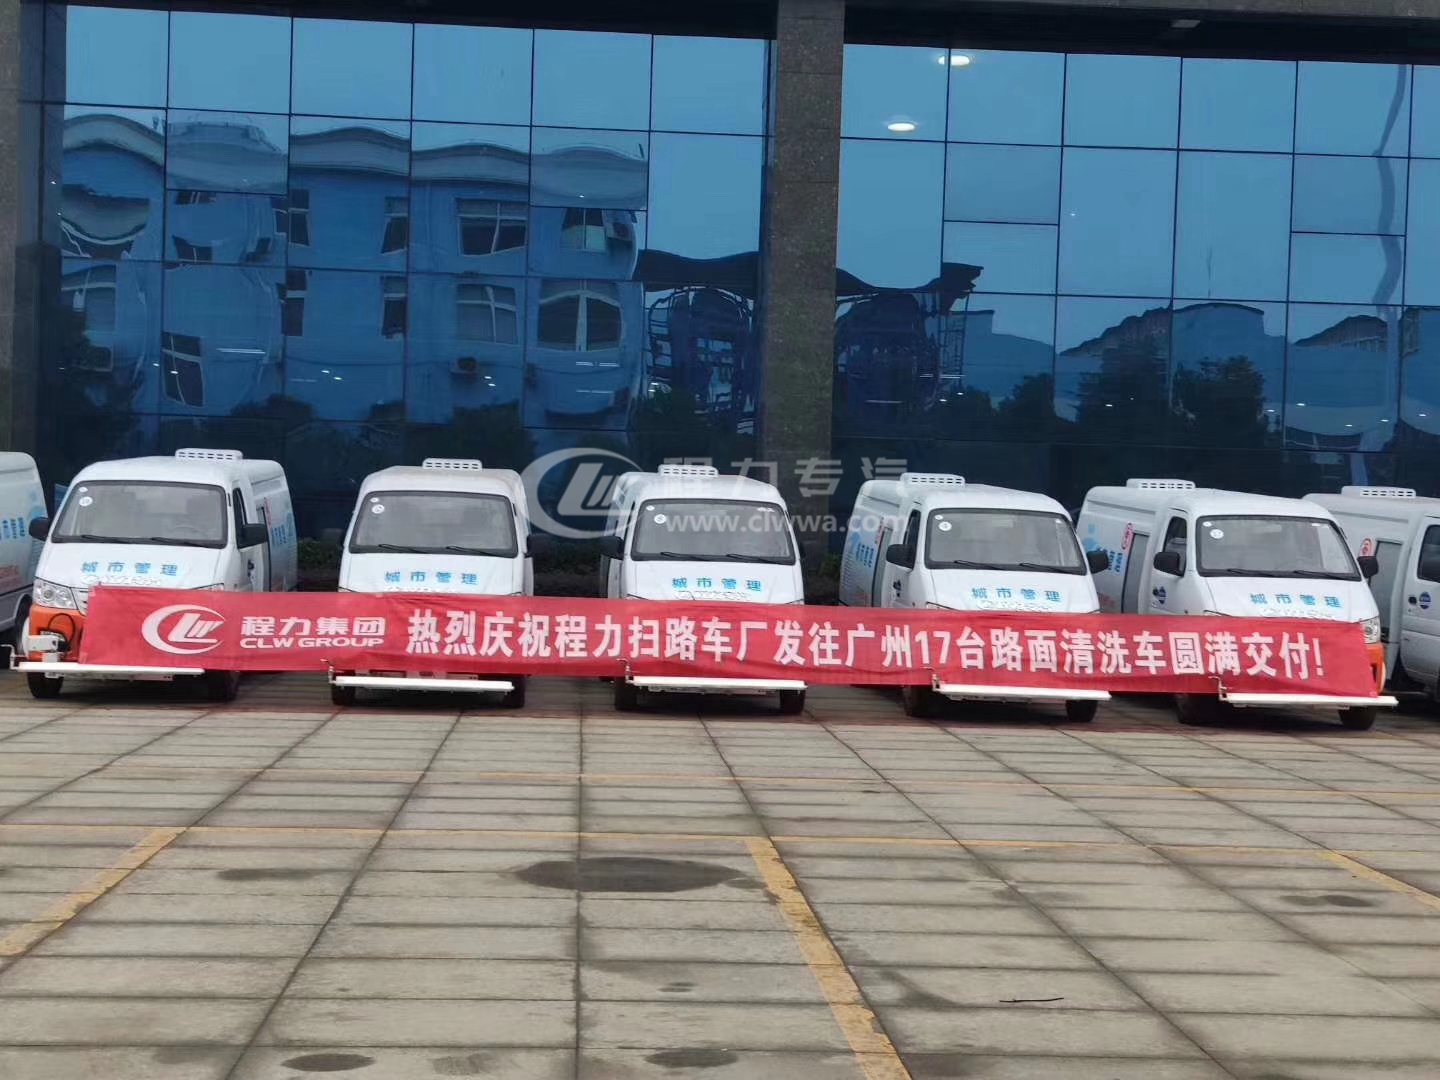 程力集团 路面清洗车17台批量供应羊城广州